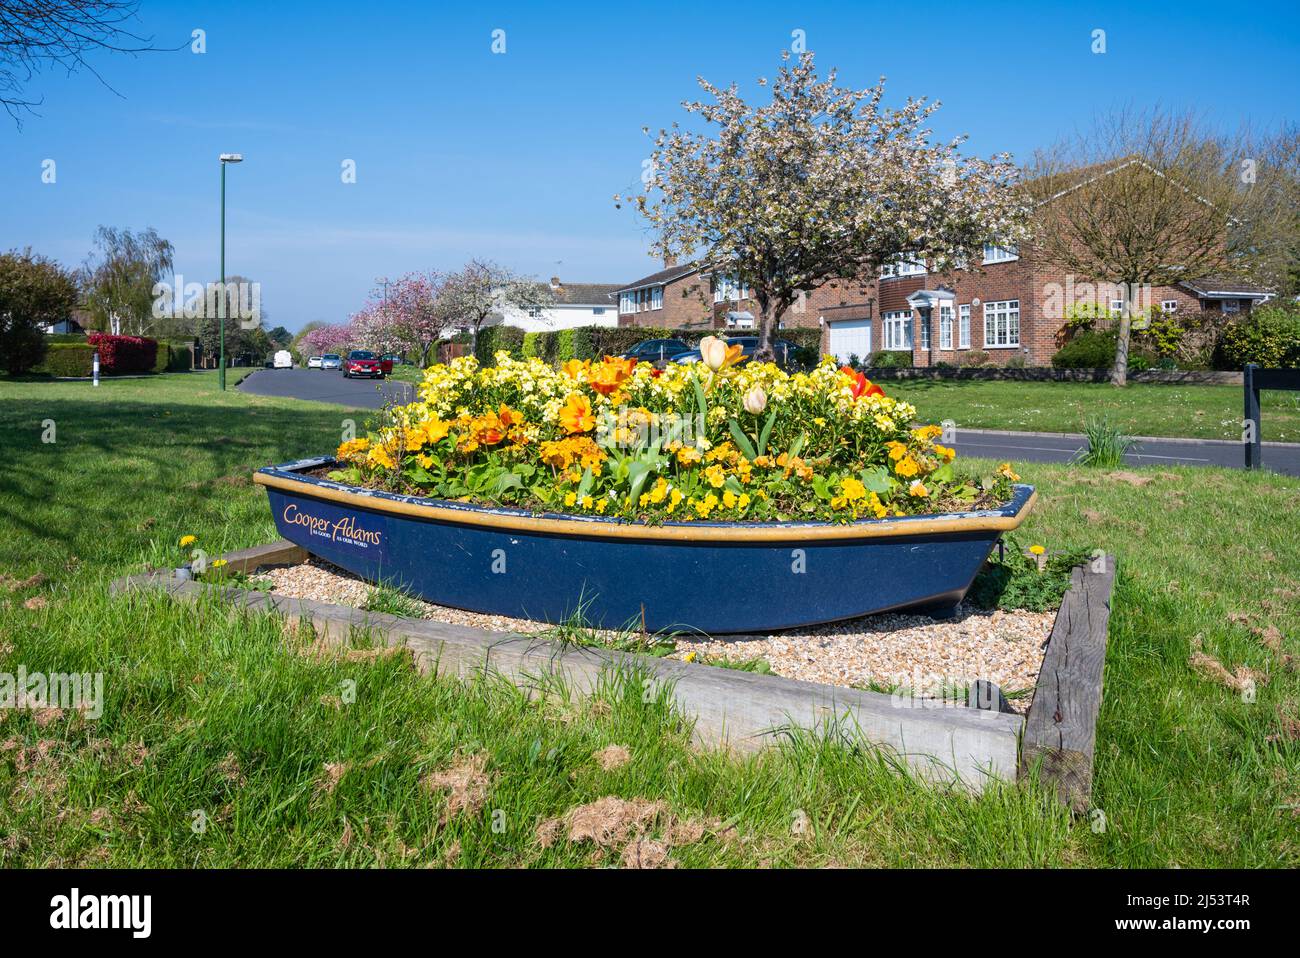 Exposition de bateaux à fleurs au printemps avec fleurs printanières à West Sussex, Angleterre, Royaume-Uni. Banque D'Images